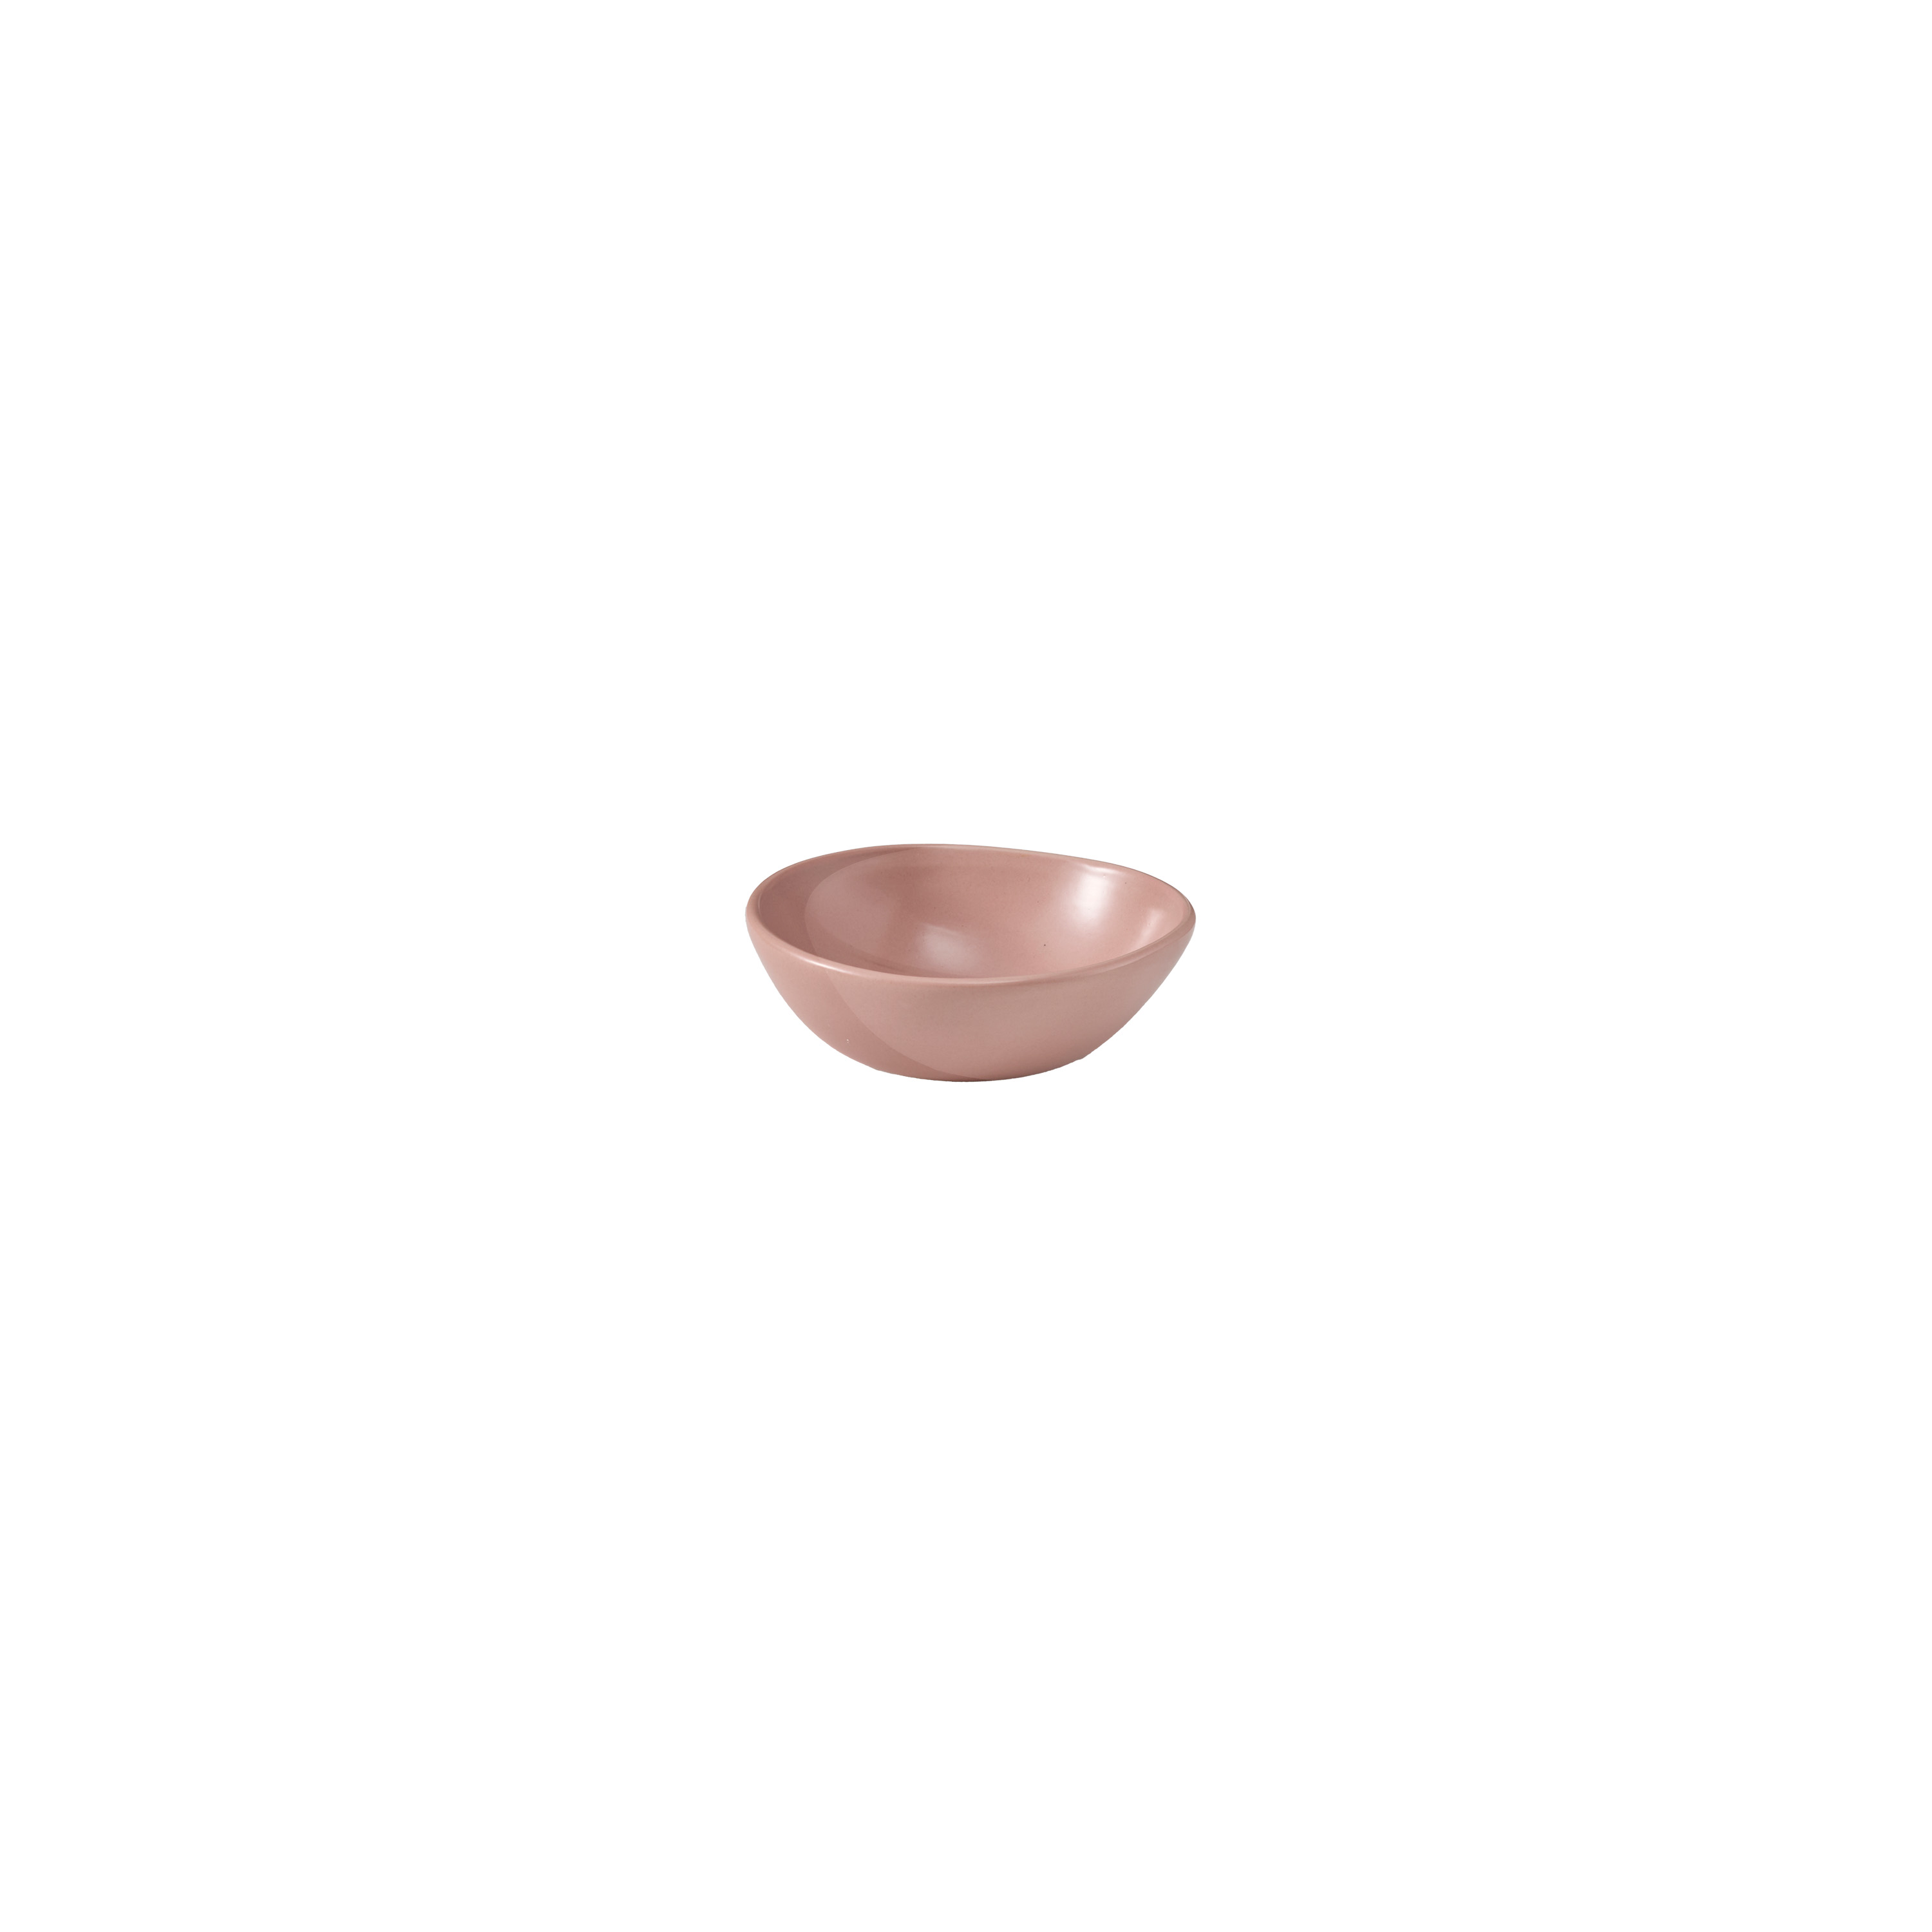 Tonkin Bowl XS: Dusty pink